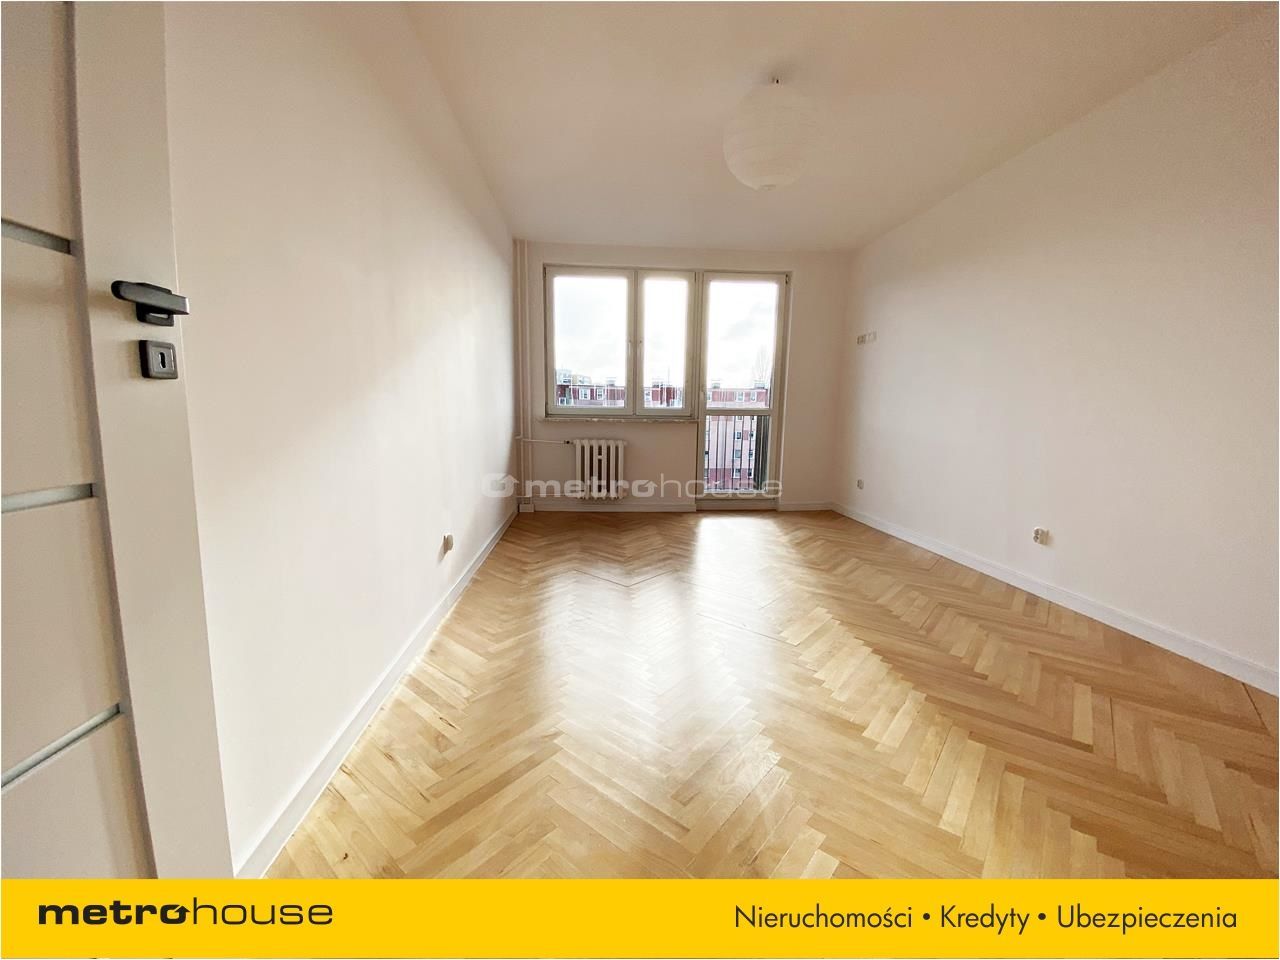 Mieszkanie na sprzedaż, Gdańsk, Przymorze, 3 pokoje, 54 mkw, za 749000 zł: zdjęcie 93185893